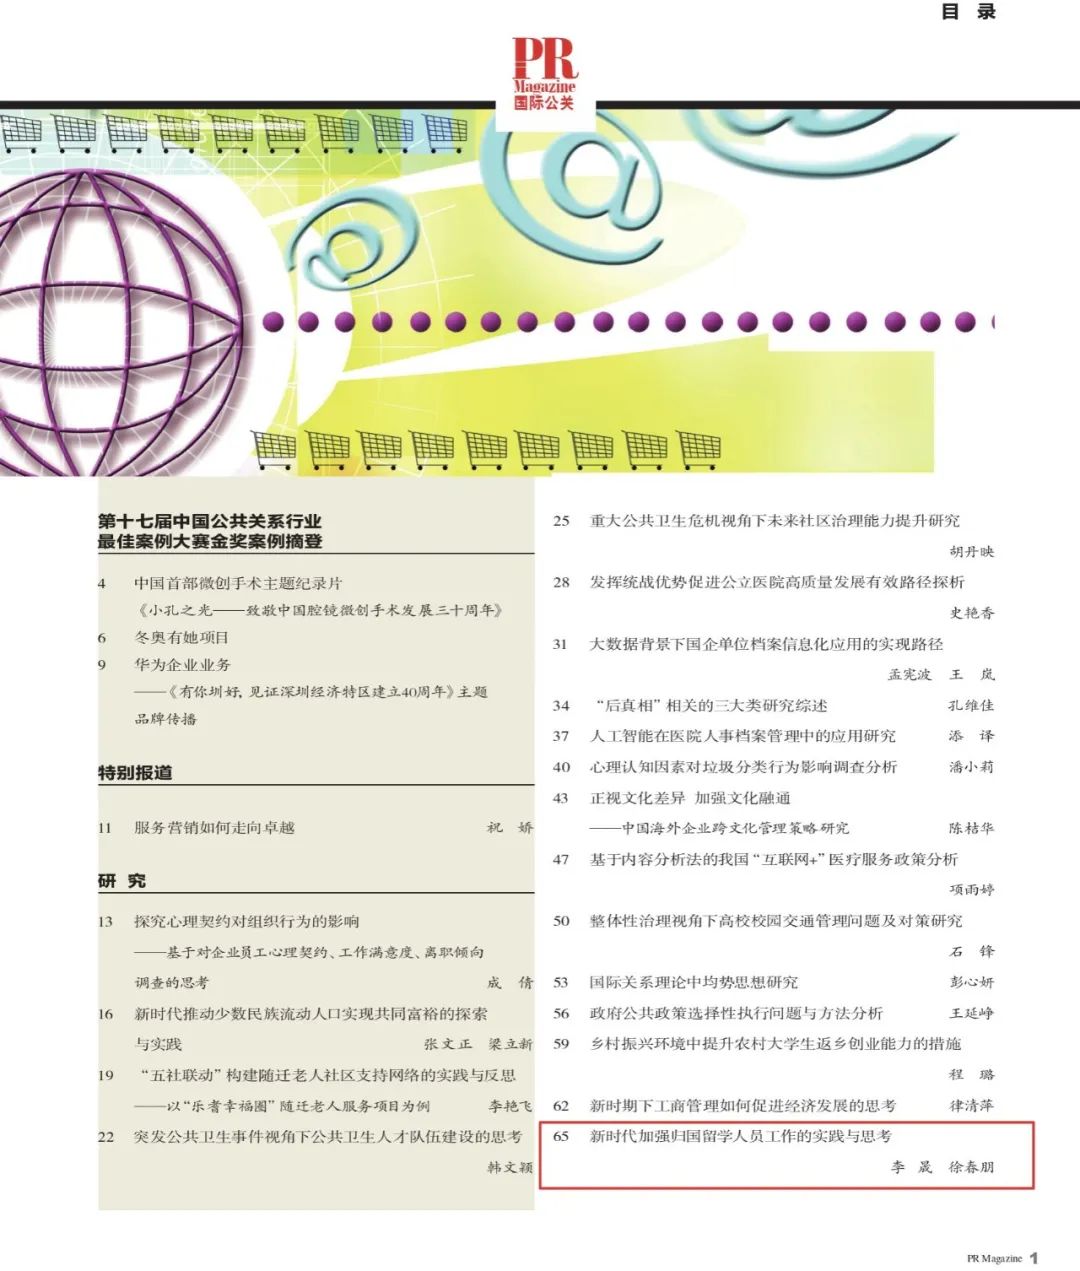 李晟撰写的论文在国际公关杂志发表